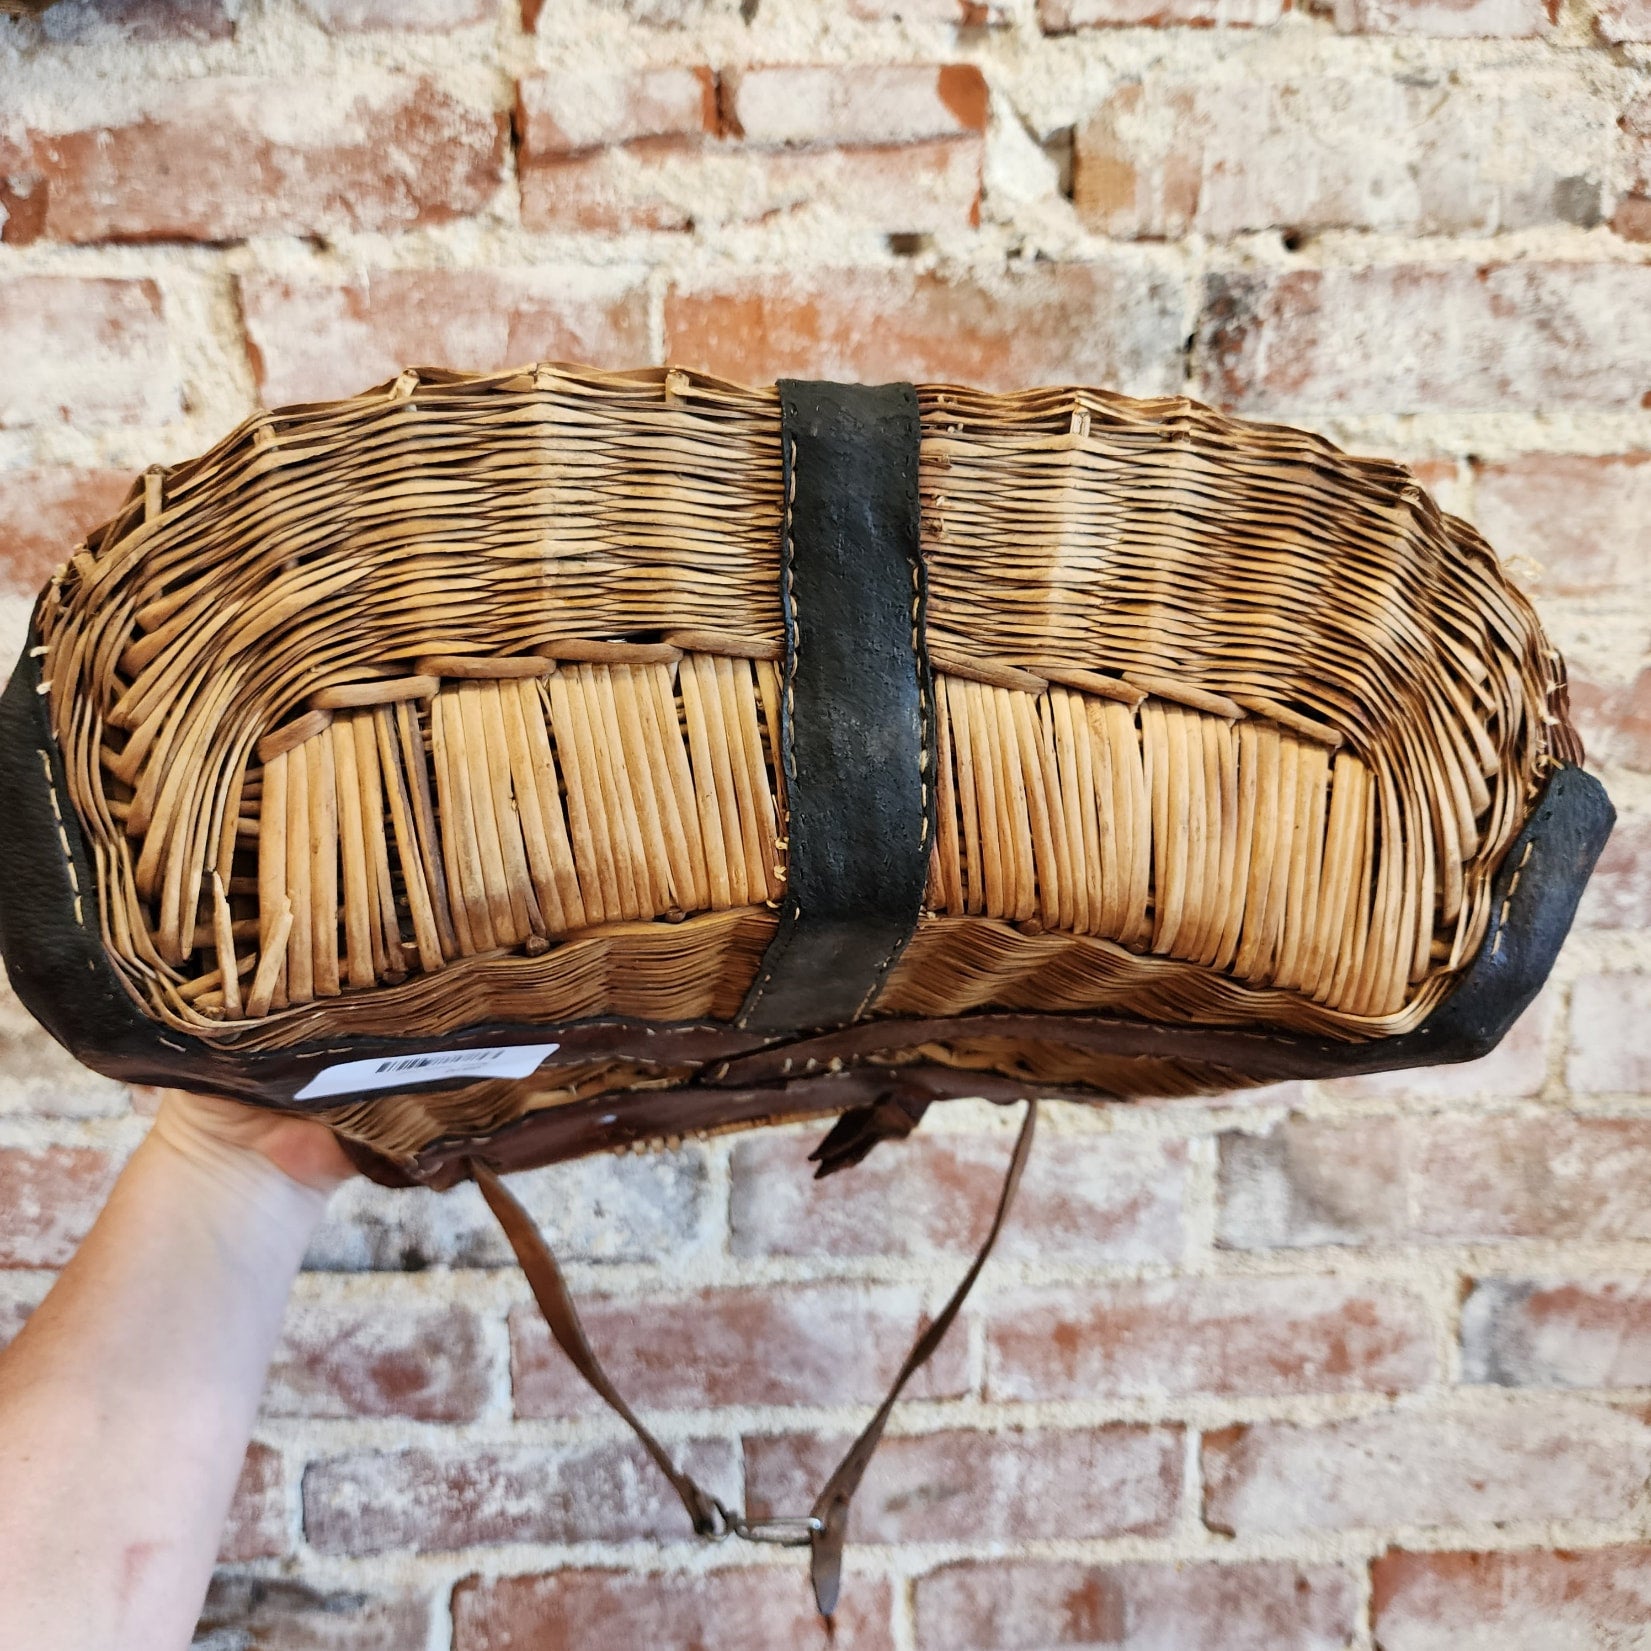 Basket - Fishing Creel